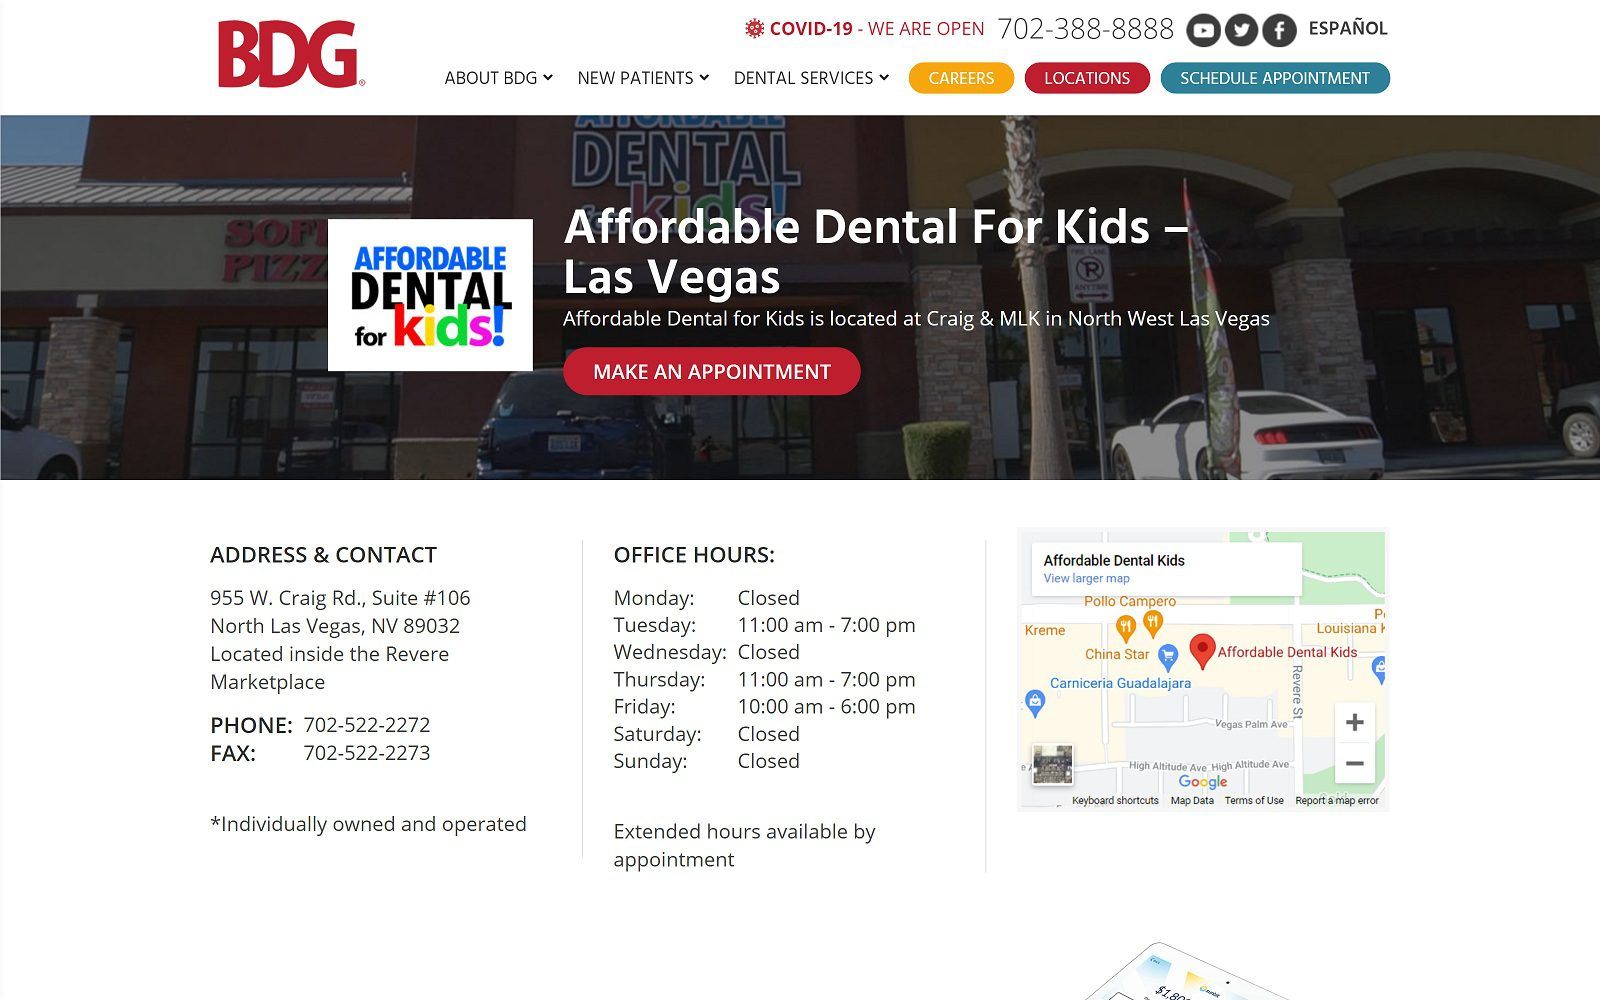 The screenshot of affordable dental kids website